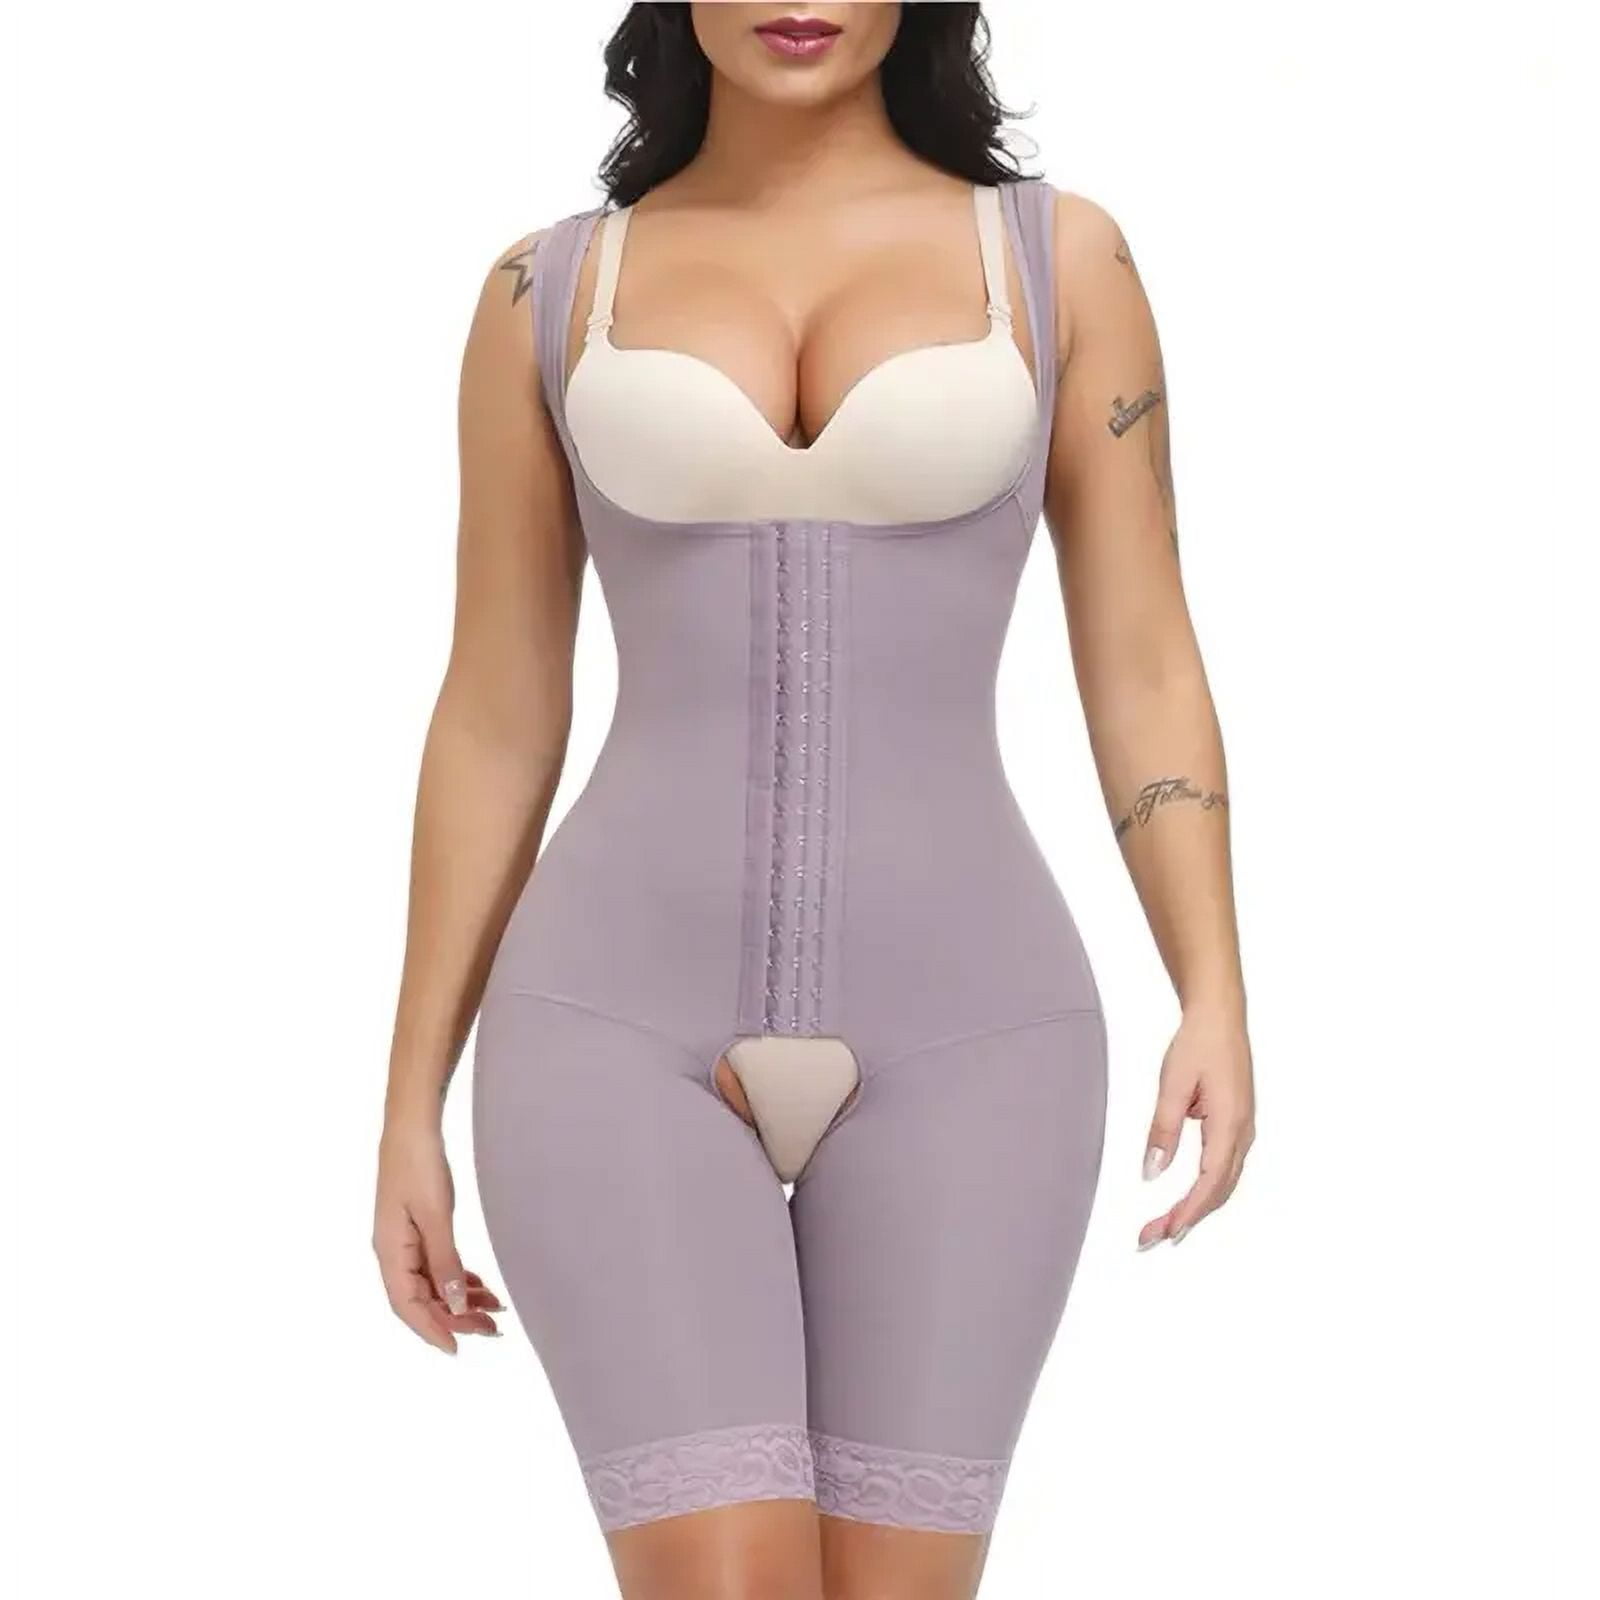 JOSHINE Girdles for Women Body Shaper Extra Firm Tummy Control purple,XXL 